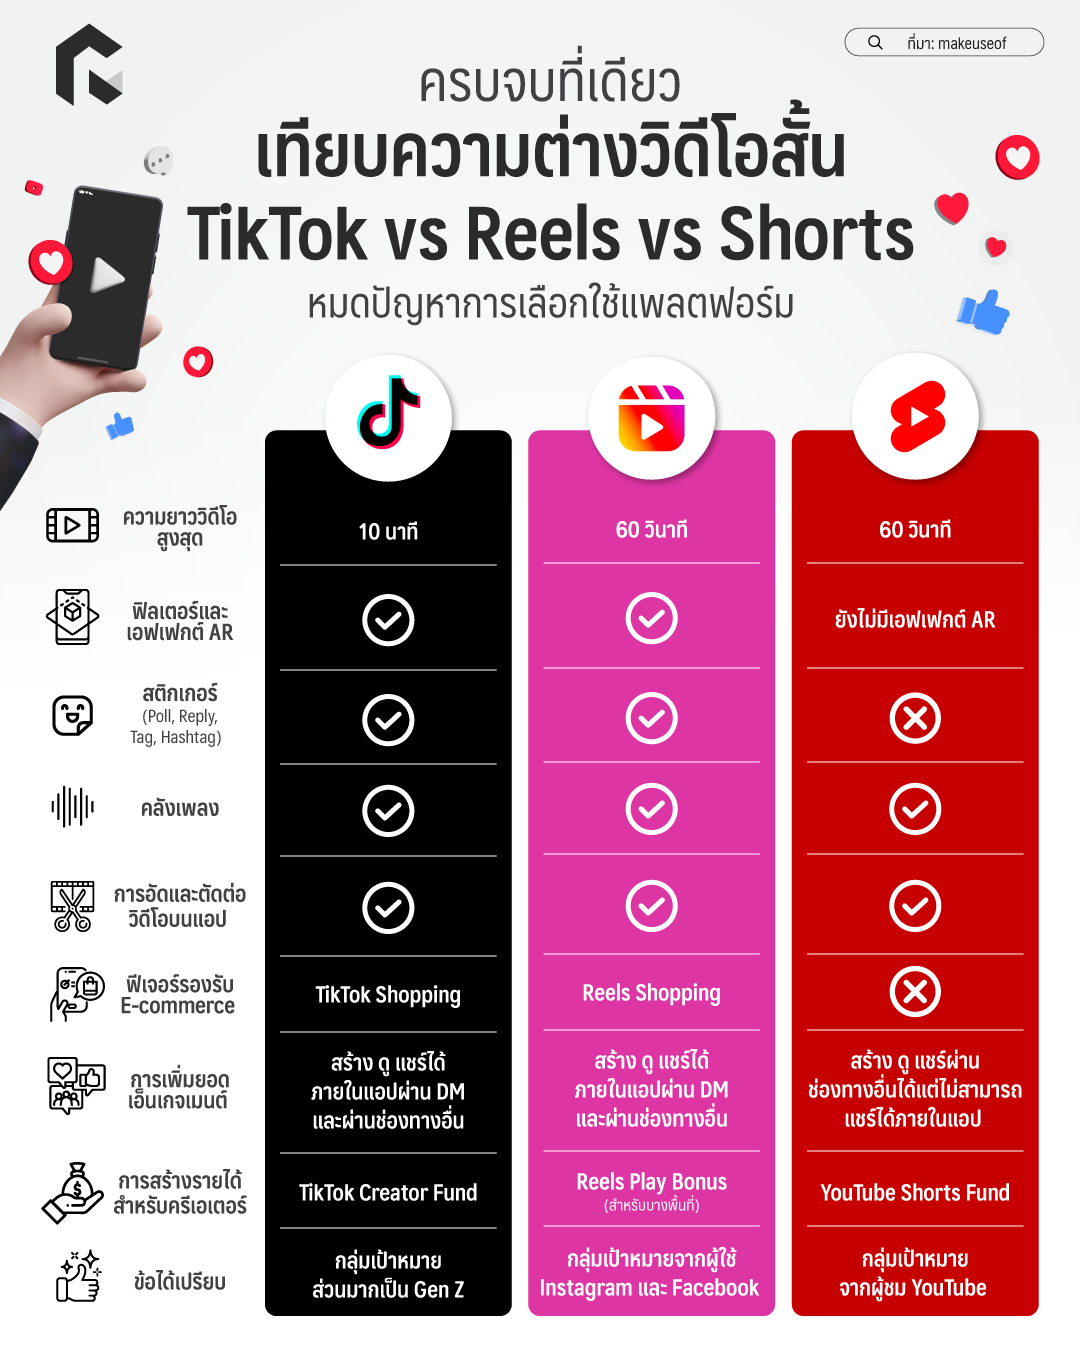 ครบจบที่เดียว เทียบความต่างวิดีโอสั้น TikTok vs Reels vs Shorts หมด